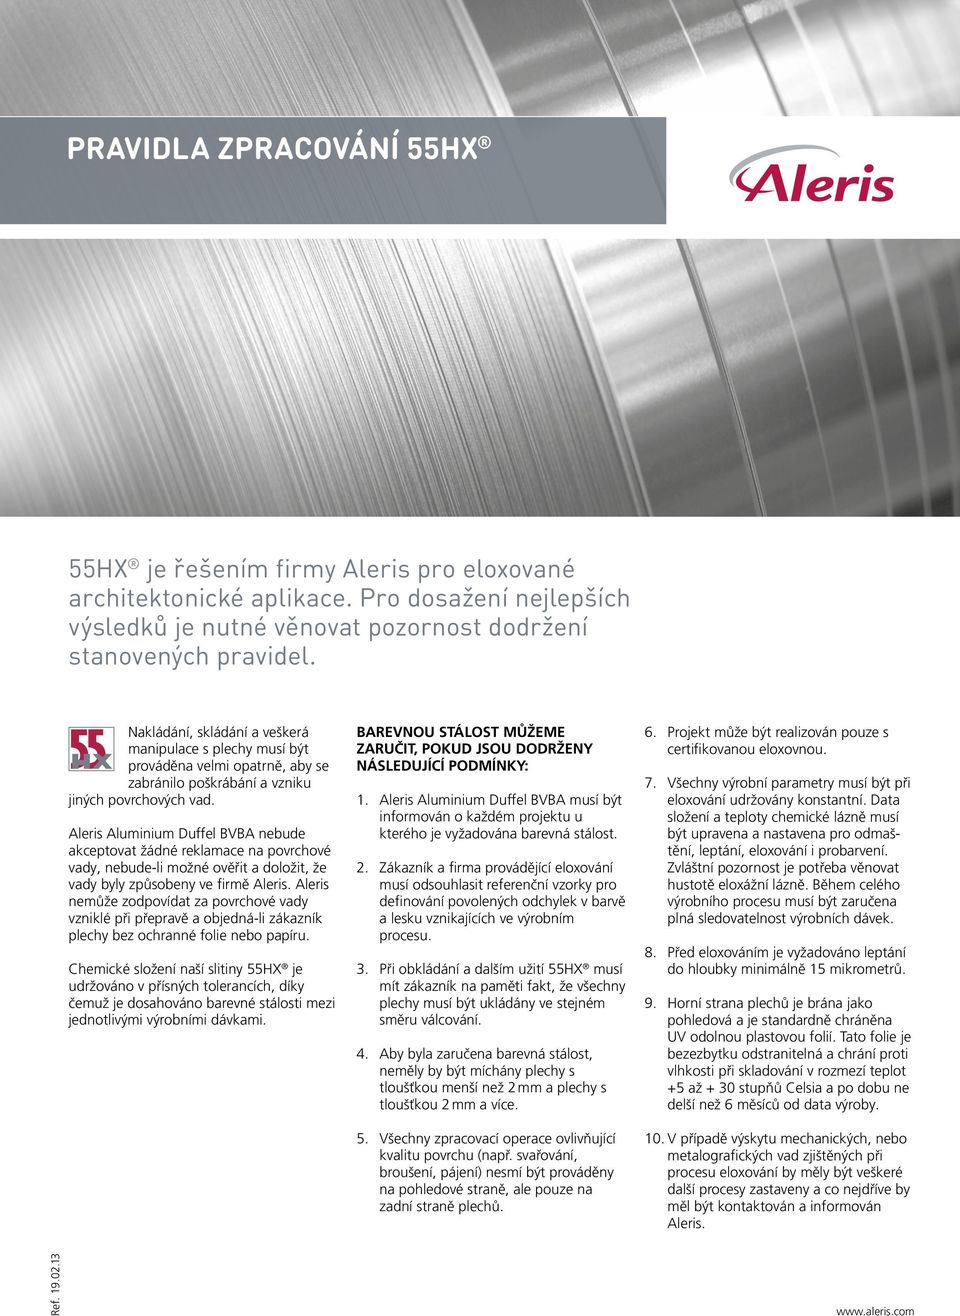 Aleris Aluminium Duffel BVBA nebude akceptovat žádné reklamace na povrchové vady, nebude-li možné ověřit a doložit, že vady byly způsobeny ve firmě Aleris.